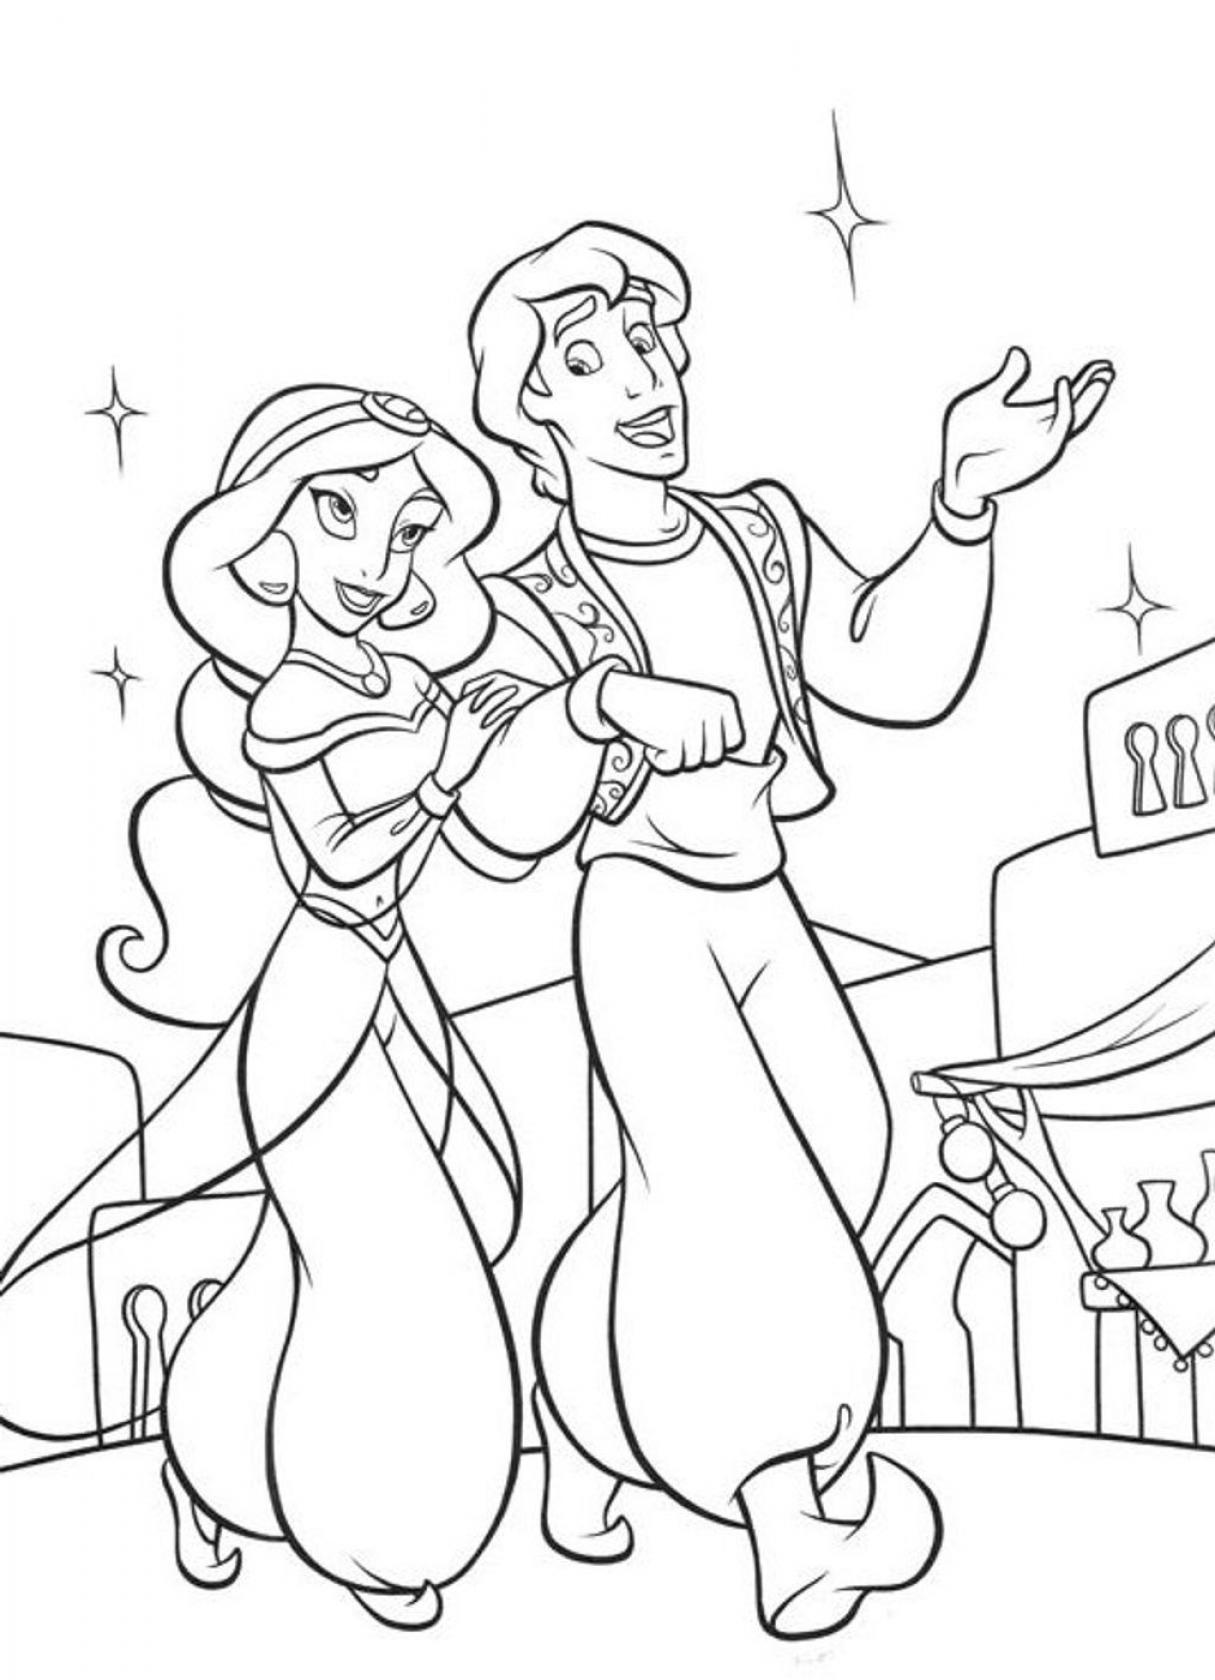 Prince Aladdin and Princess Jasmine coloring sheets for kids - SheetalColor.com